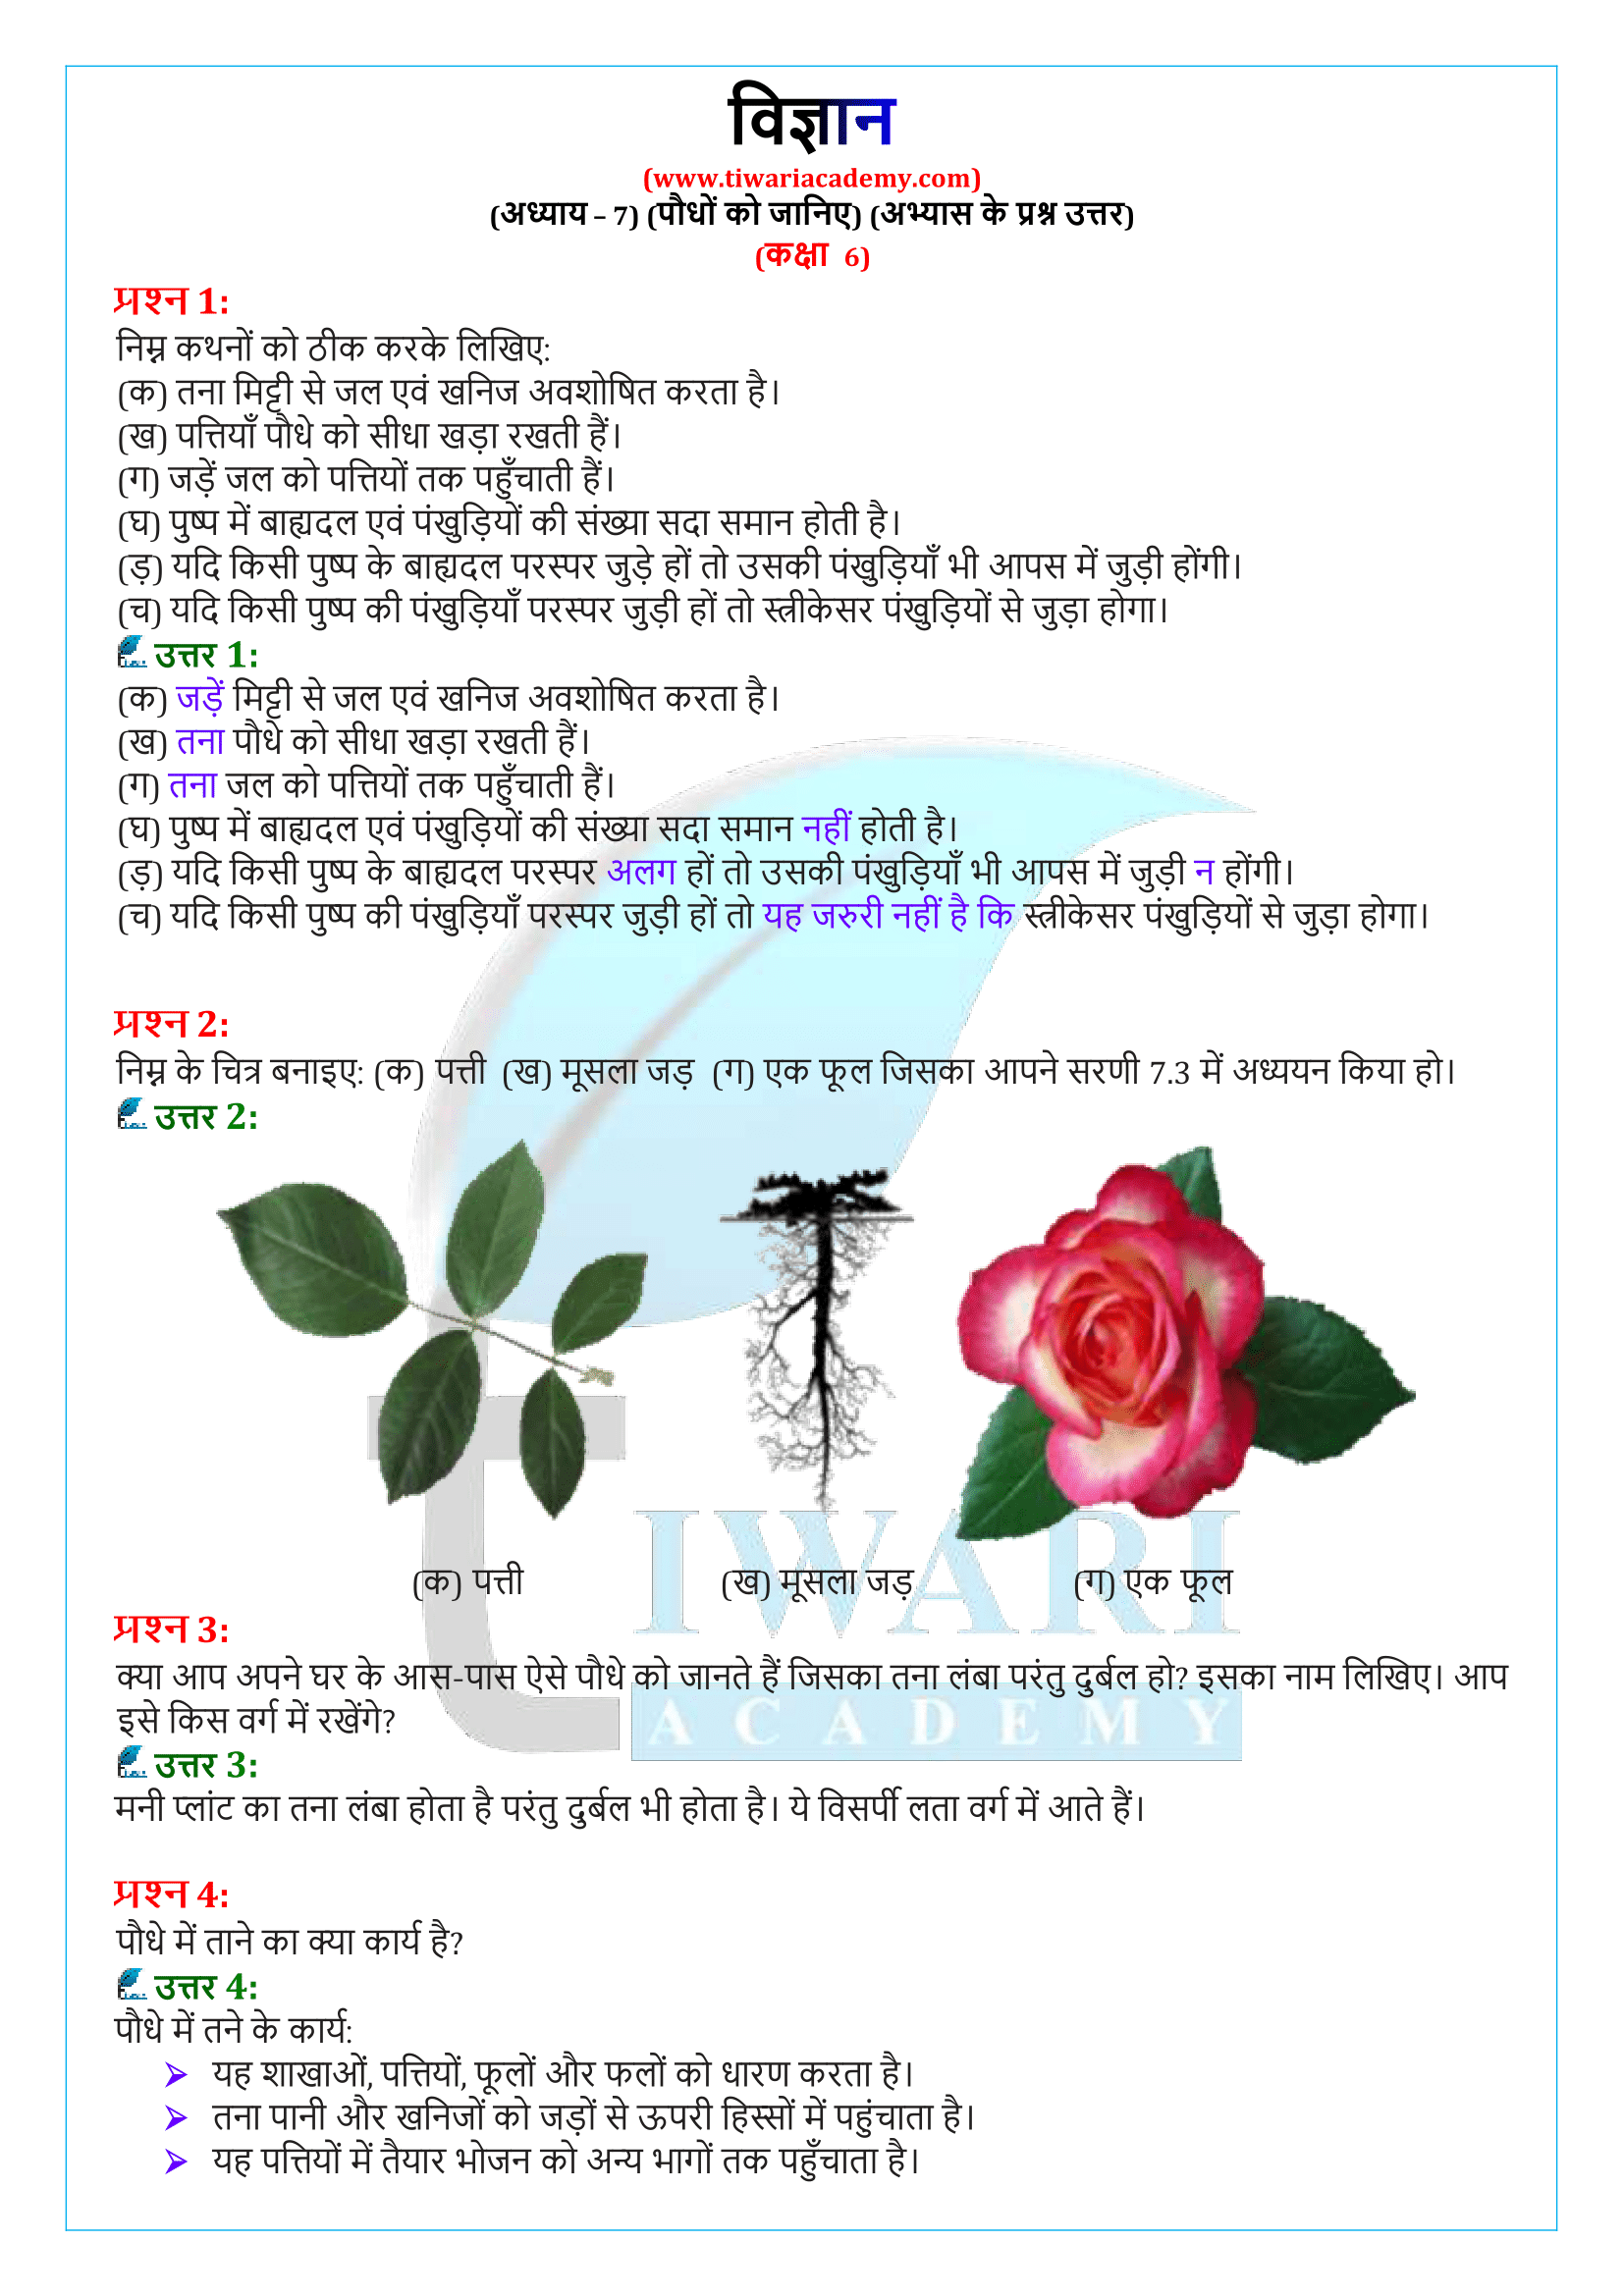 कक्षा 6 विज्ञान अध्याय 7: पौधो को जानिए